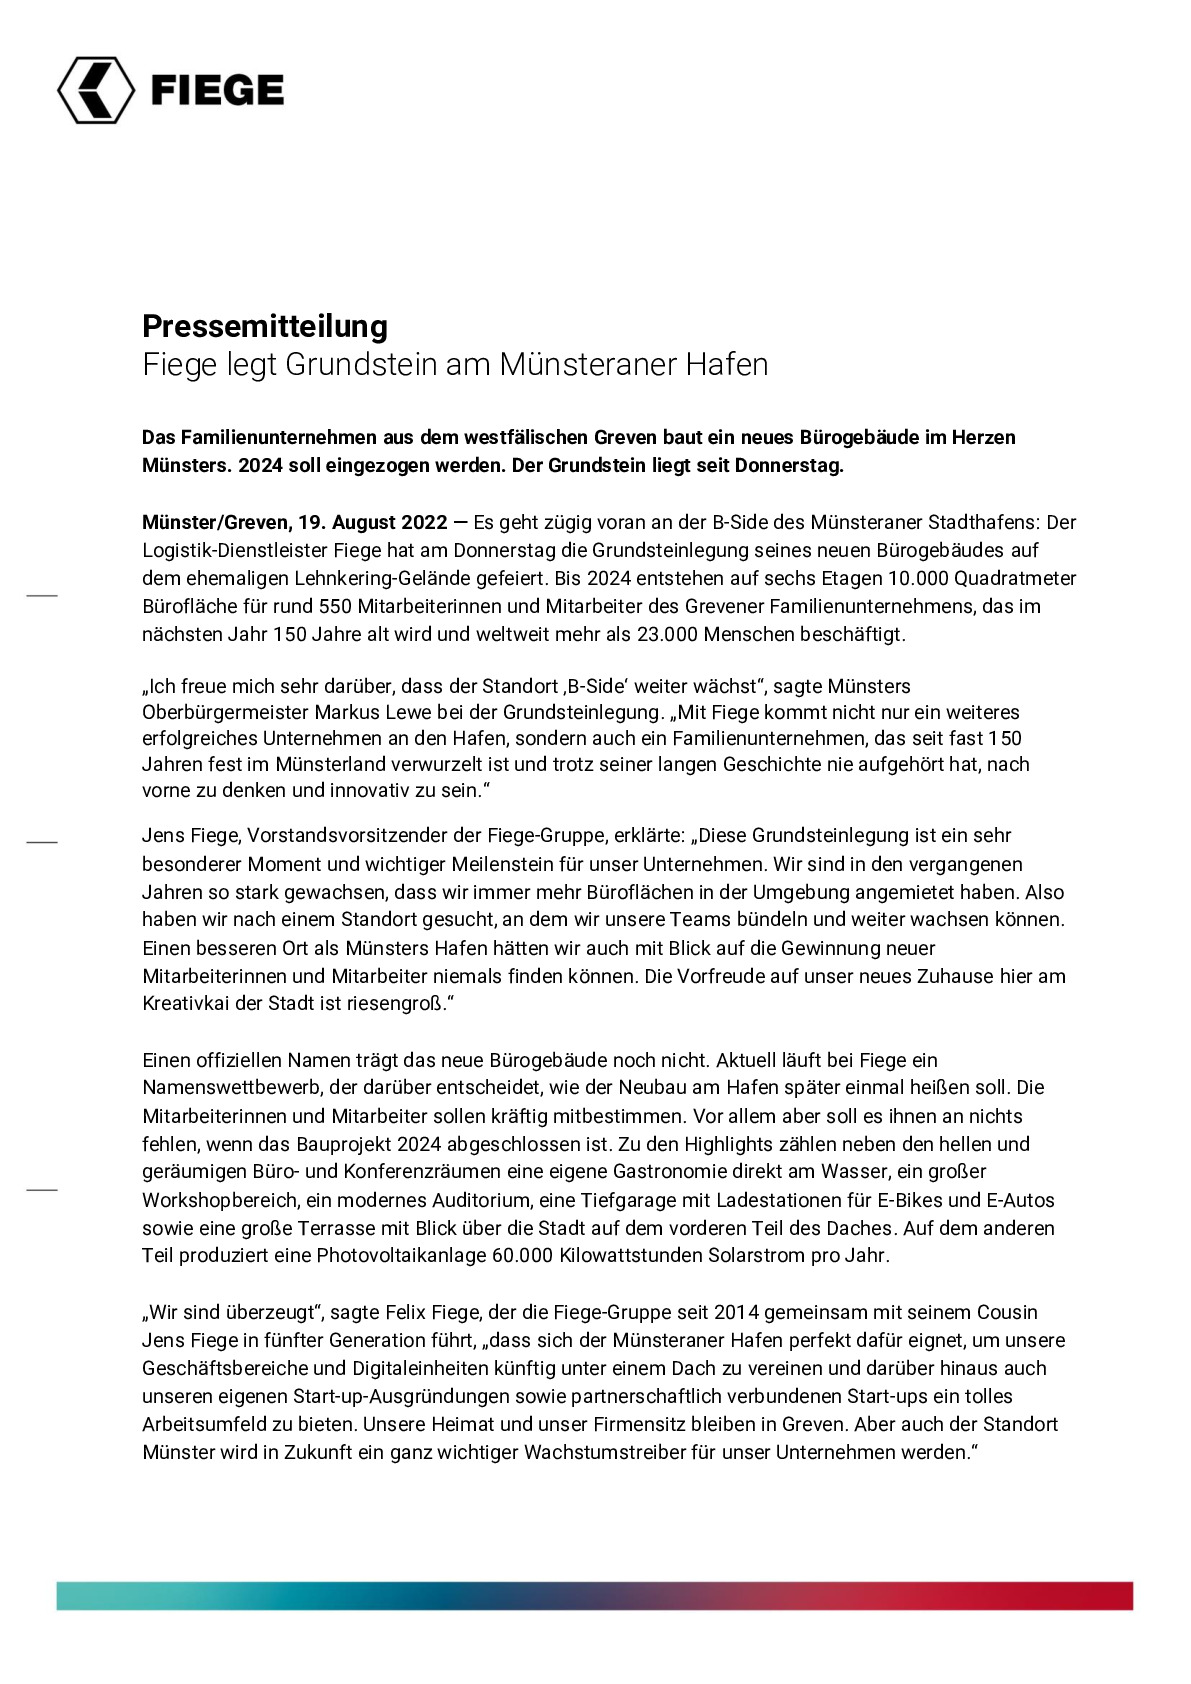 22-08-19 PR_Fiege_Grundsteinlegung Münster Hafen.pdf